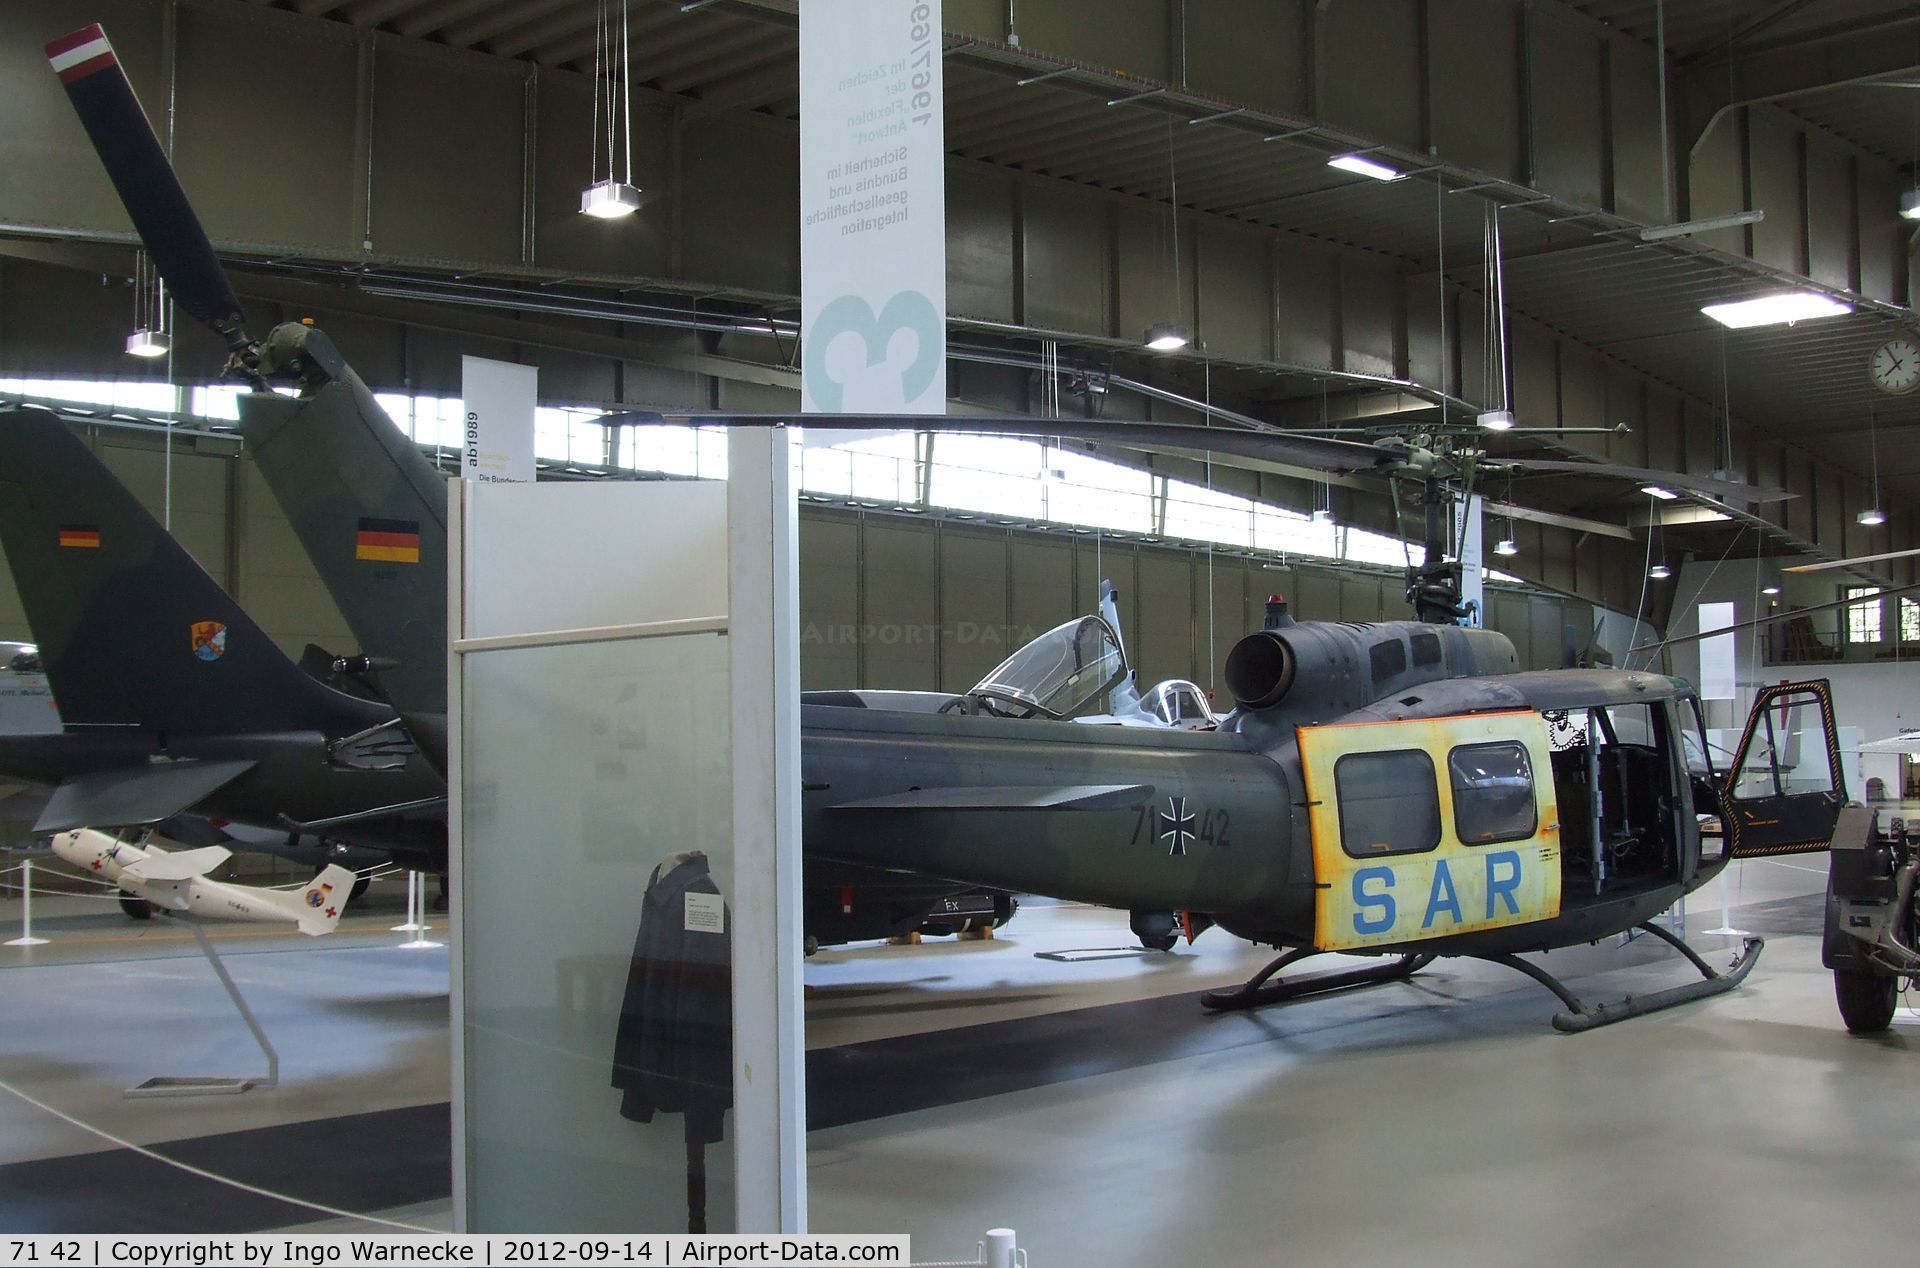 71 42, Bell (Dornier) UH-1D Iroquois (205) C/N 8202, Bell (Dornier) UH-1D Iroquois at the Luftwaffenmuseum, Berlin-Gatow